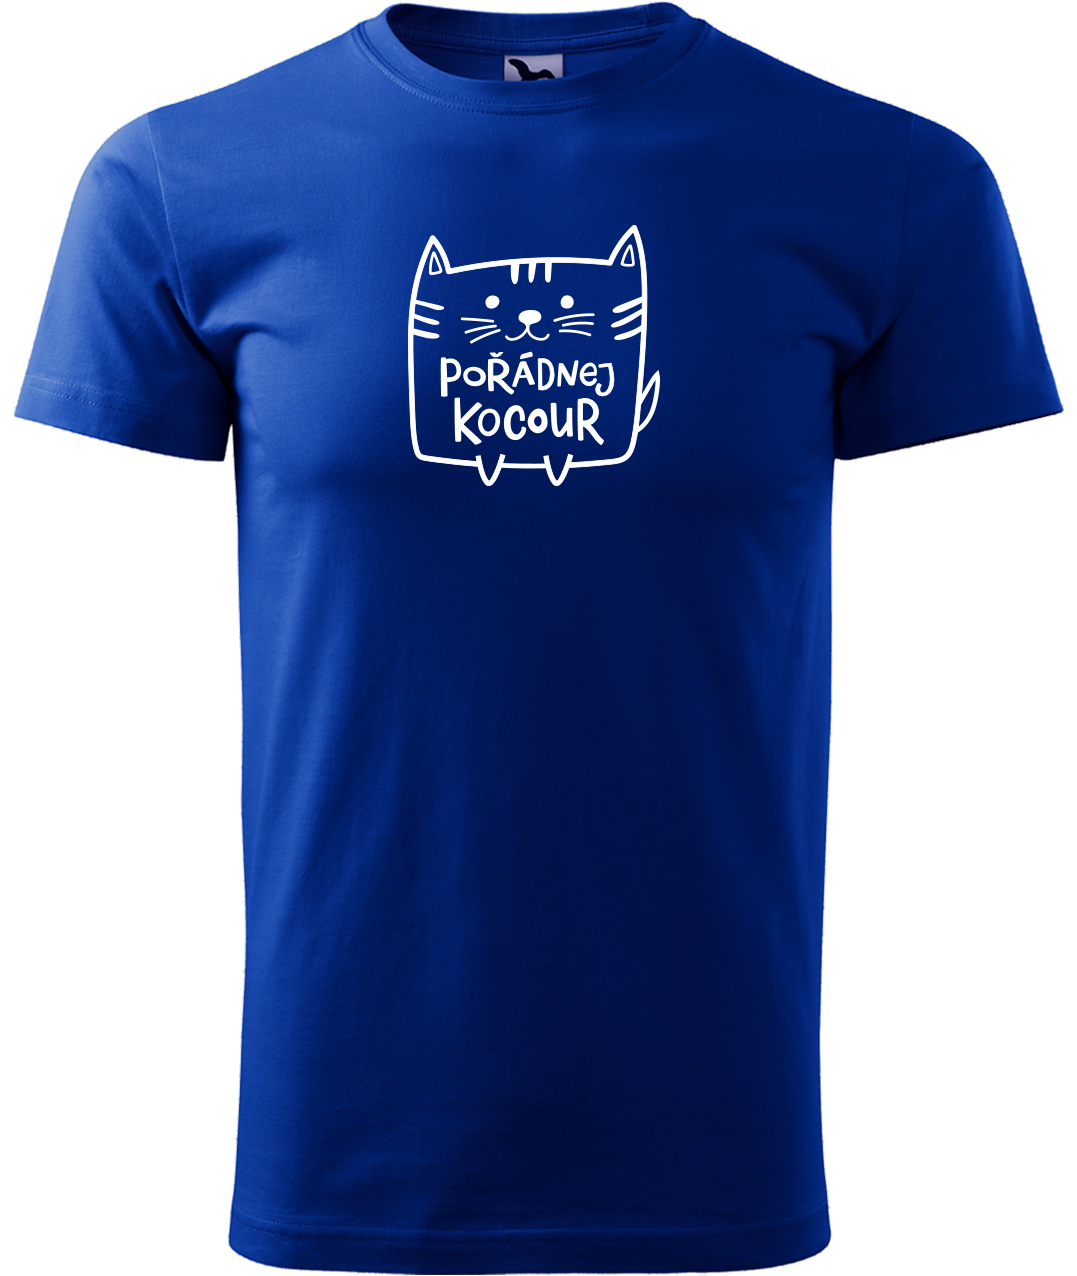 Pánské tričko s kočkou - Pořádnej kocour Velikost: S, Barva: Královská modrá (05)